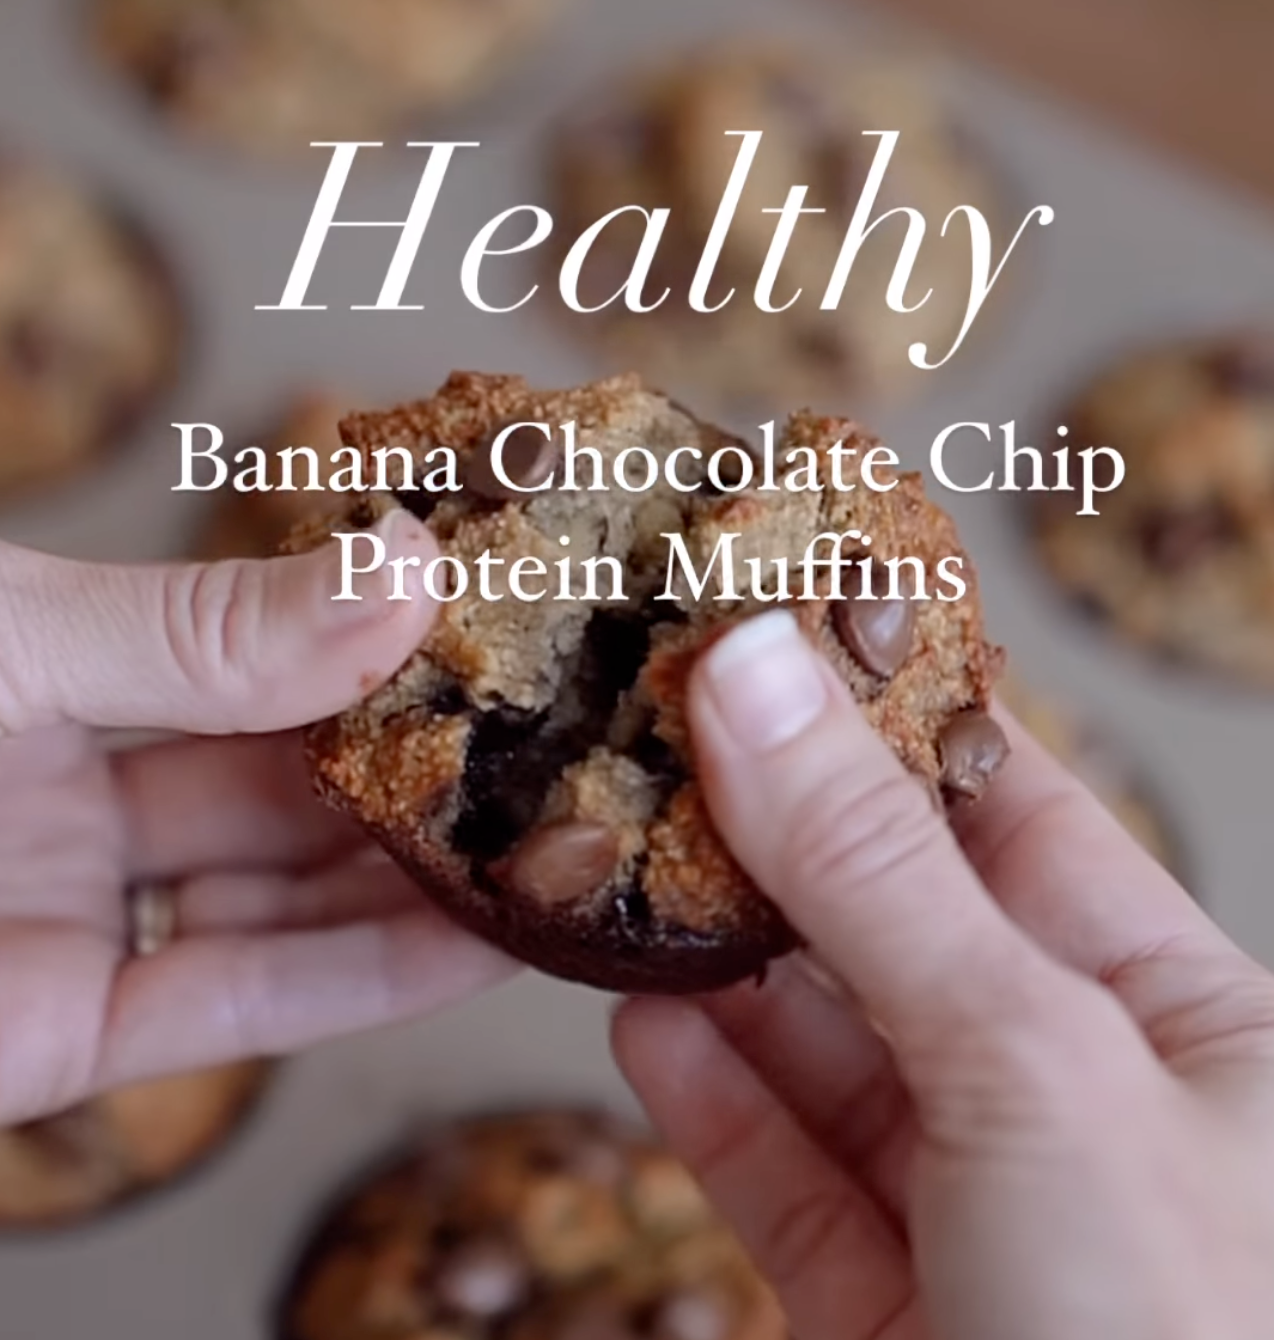 Banana chocolate chip protein muffins